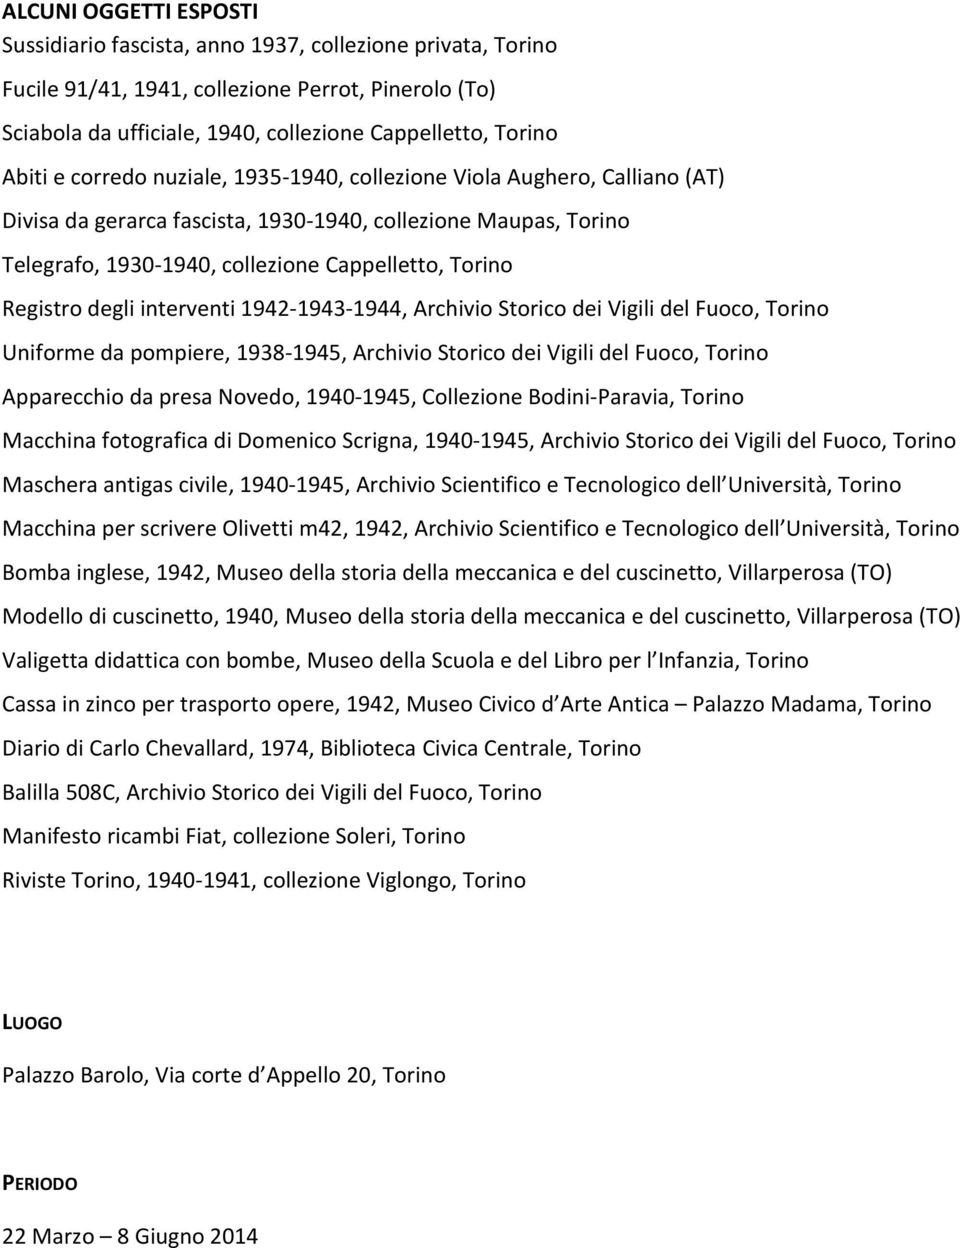 Registro degli interventi 1942-1943-1944, Archivio Storico dei Vigili del Fuoco, Torino Uniforme da pompiere, 1938-1945, Archivio Storico dei Vigili del Fuoco, Torino Apparecchio da presa Novedo,